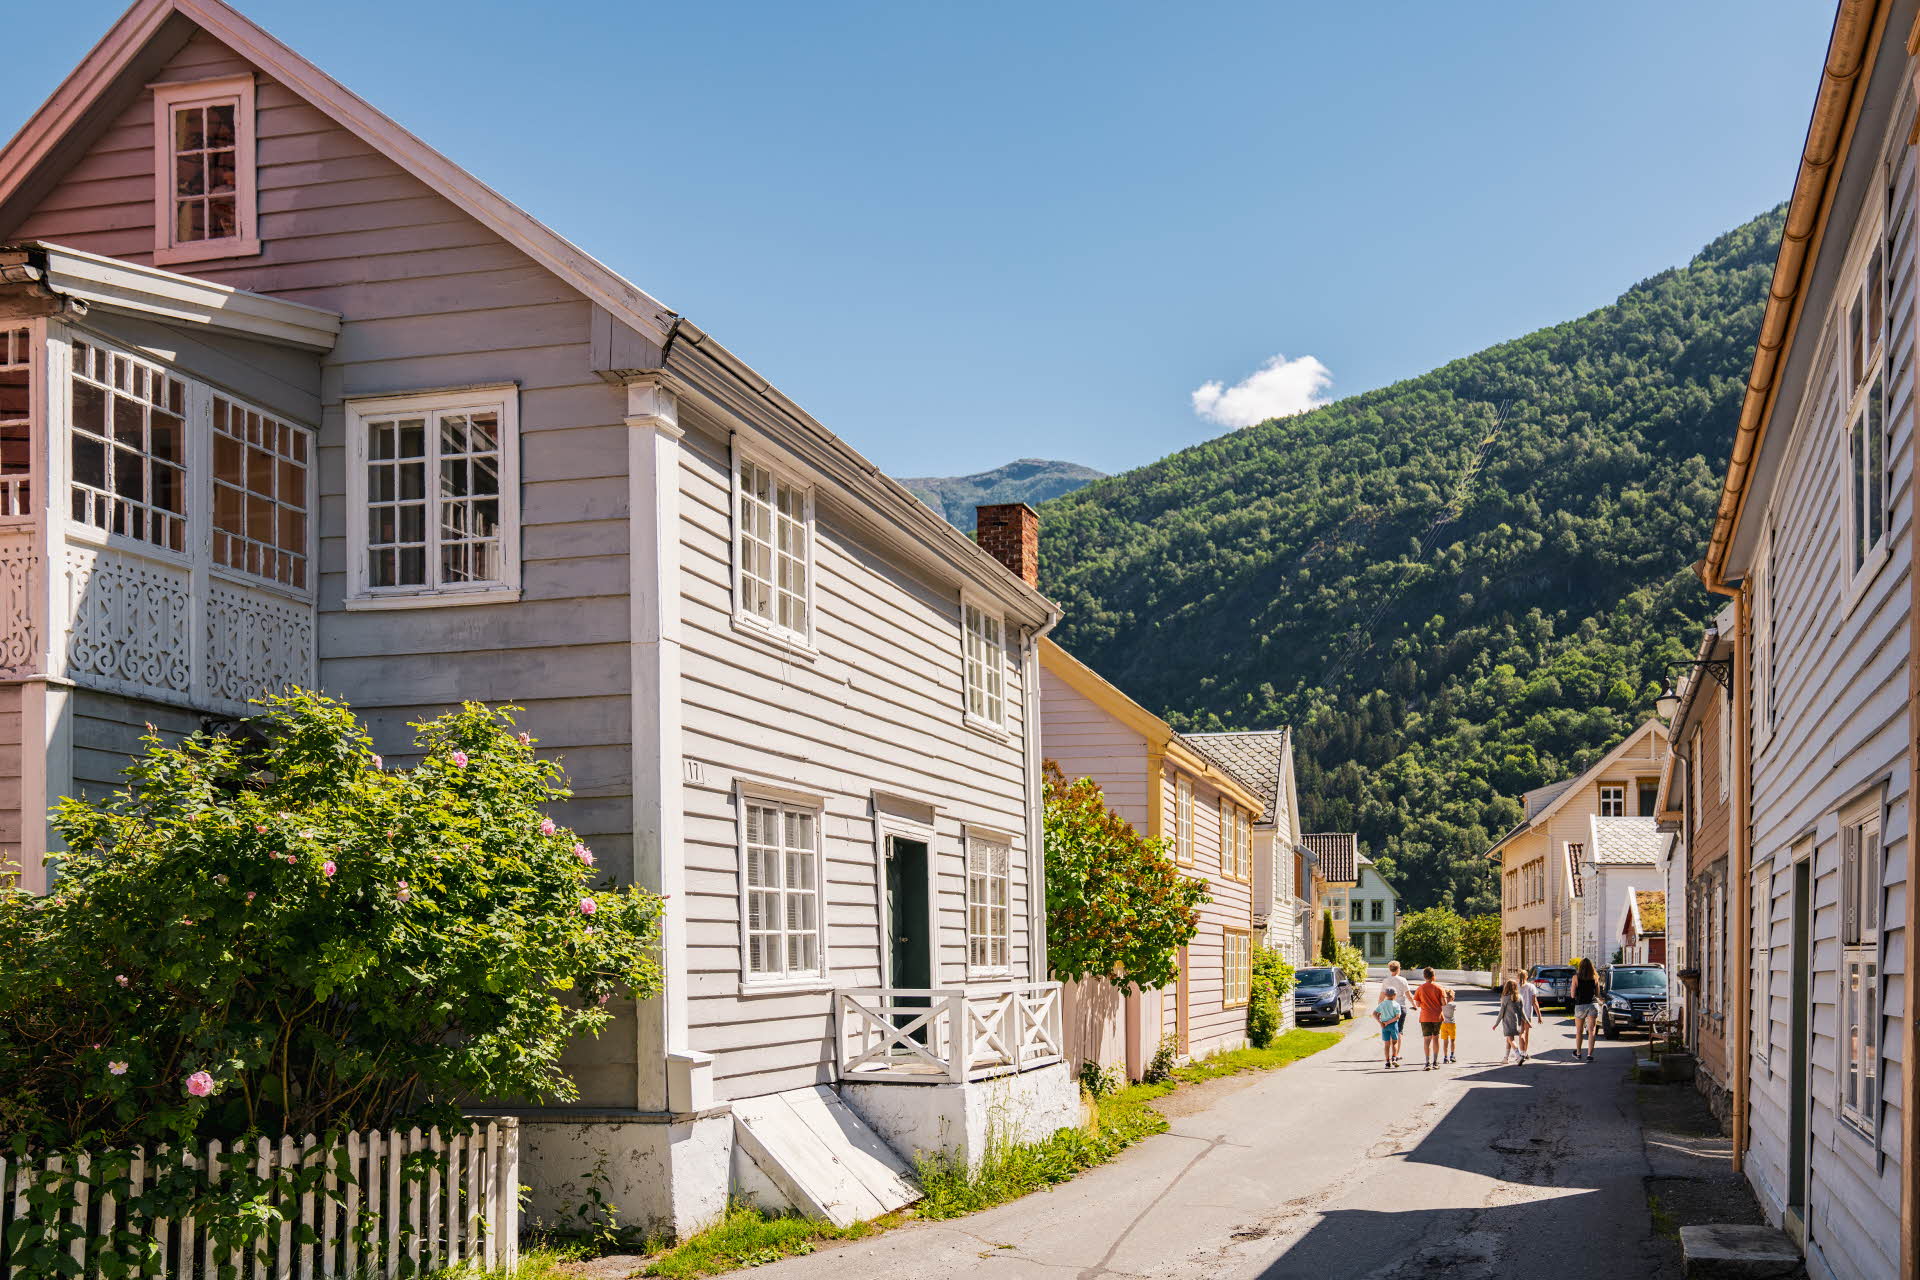 Petites maisons chaleureuses dans la vieille ville de Lærdal un jour d’été avec 3 personnes au loin